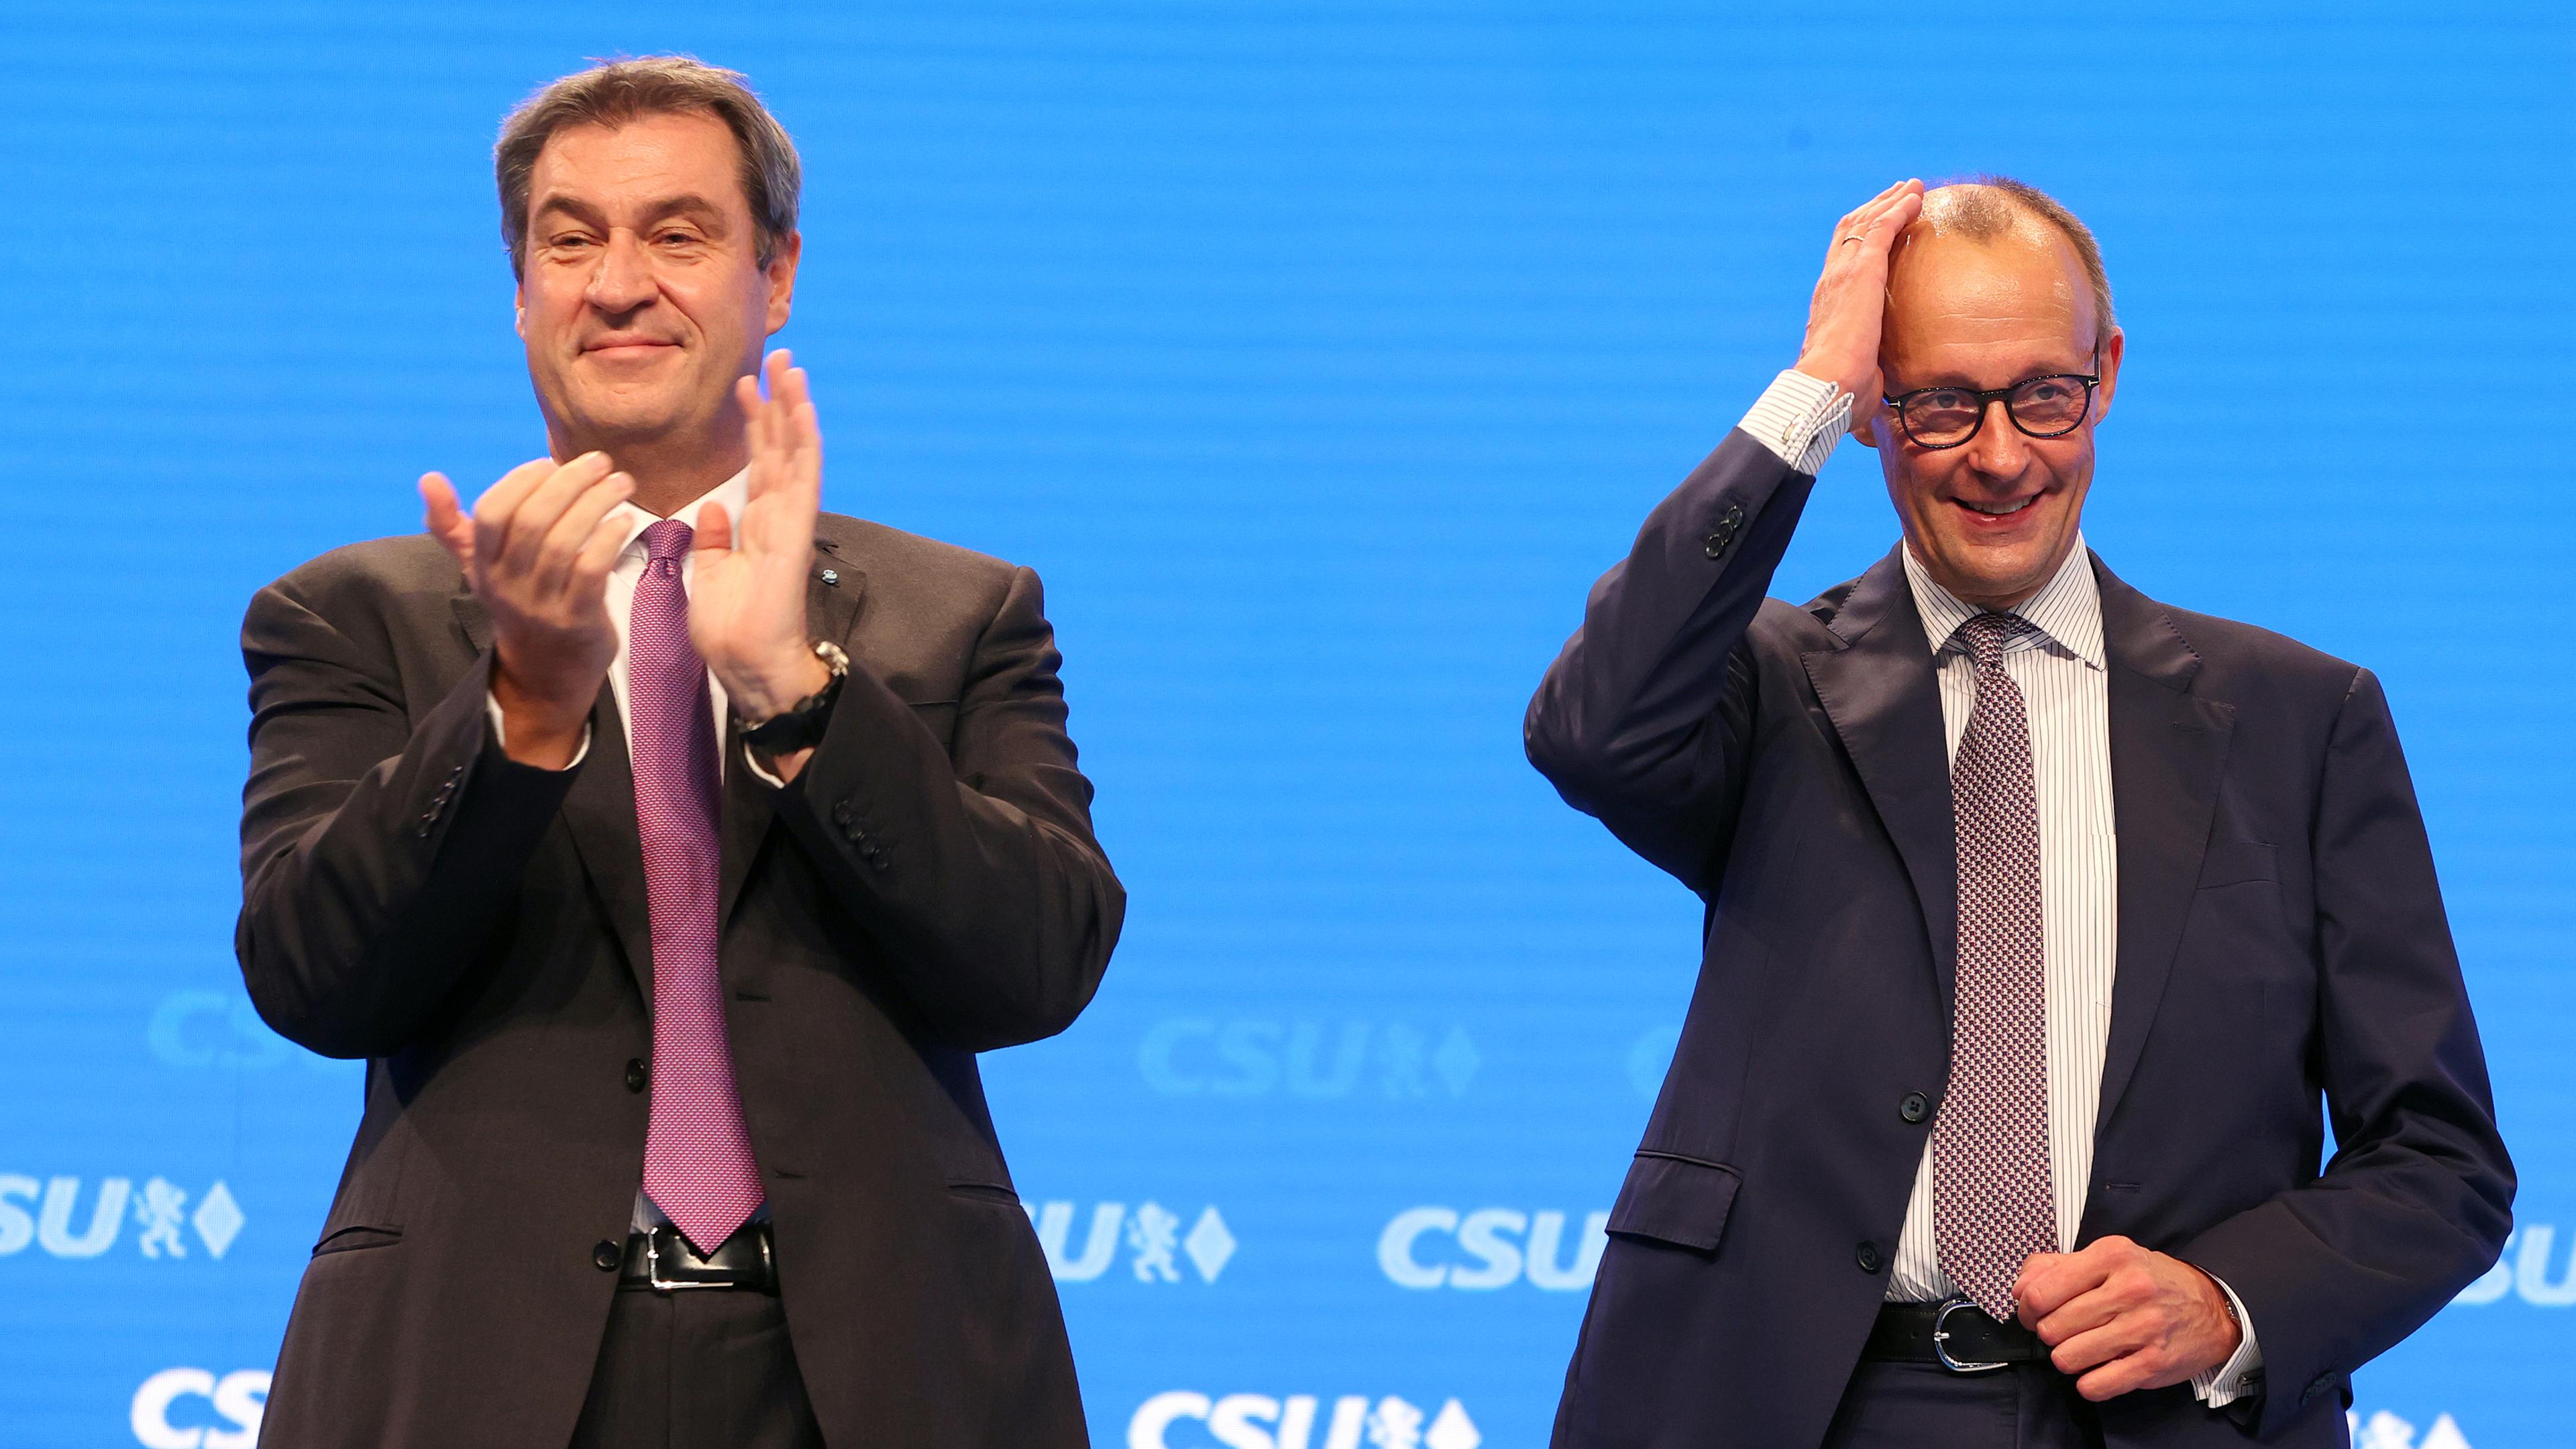 Bayern, Augsburg: Markus Söder, CSU-Vorsitzender und bayerischer Ministerpräsident (l), steht mit Friedrich Merz,Vorsitzender der CDU, nach dessen Rede auf der Bühne. 